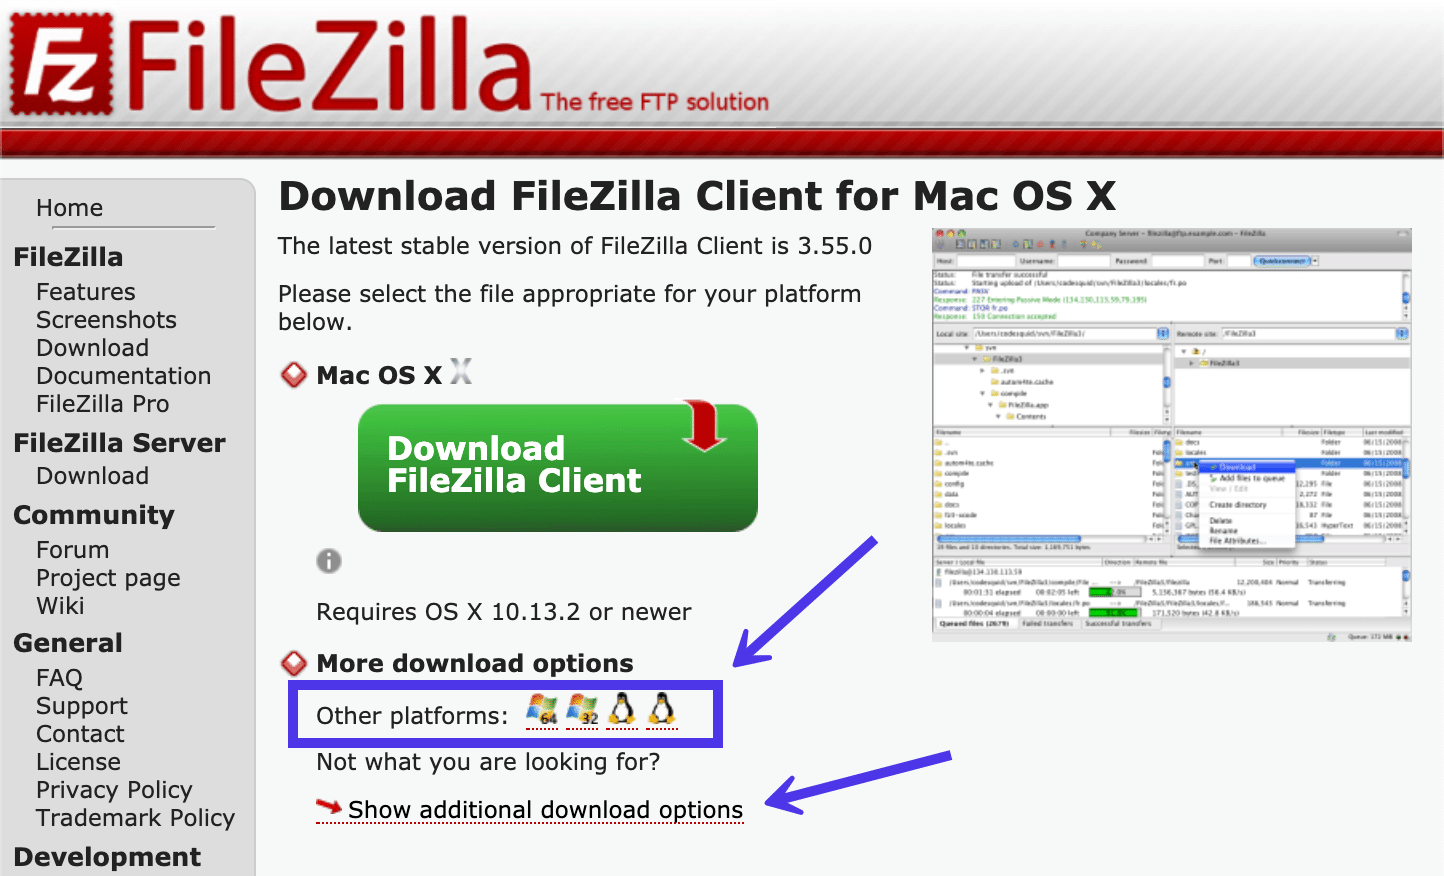 Du kannst dir FileZilla-Versionen für andere Plattformen ansehen